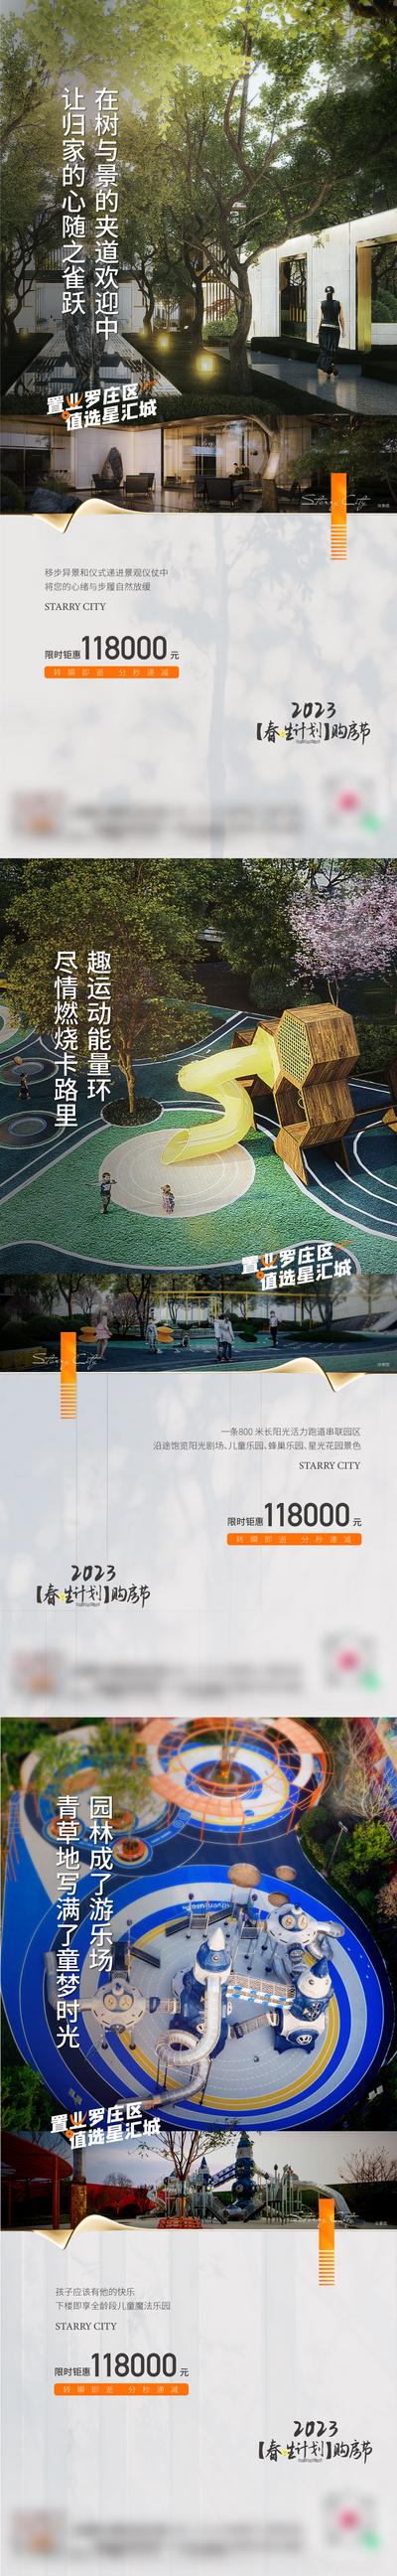 南门网 广告 海报 运动 园林 刷屏 儿童 游乐 跑步 绿植 景观 系列